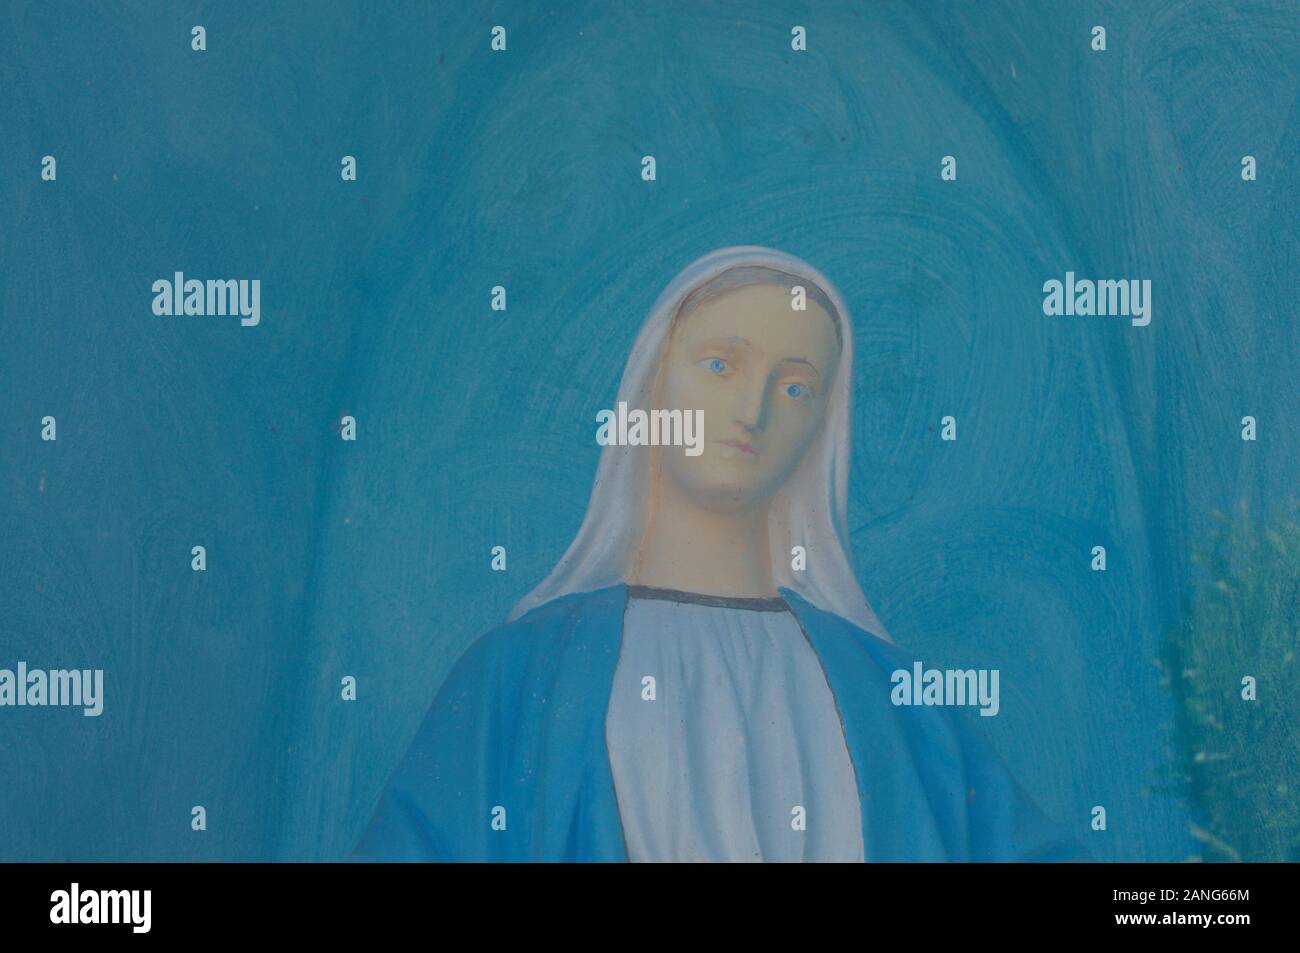 Varèse, Lombardie, Italie - 1er septembre 2019 : Gros plan d'une belle peinture que portraits la Vierge Marie (Maria) sur un fond bleu Banque D'Images